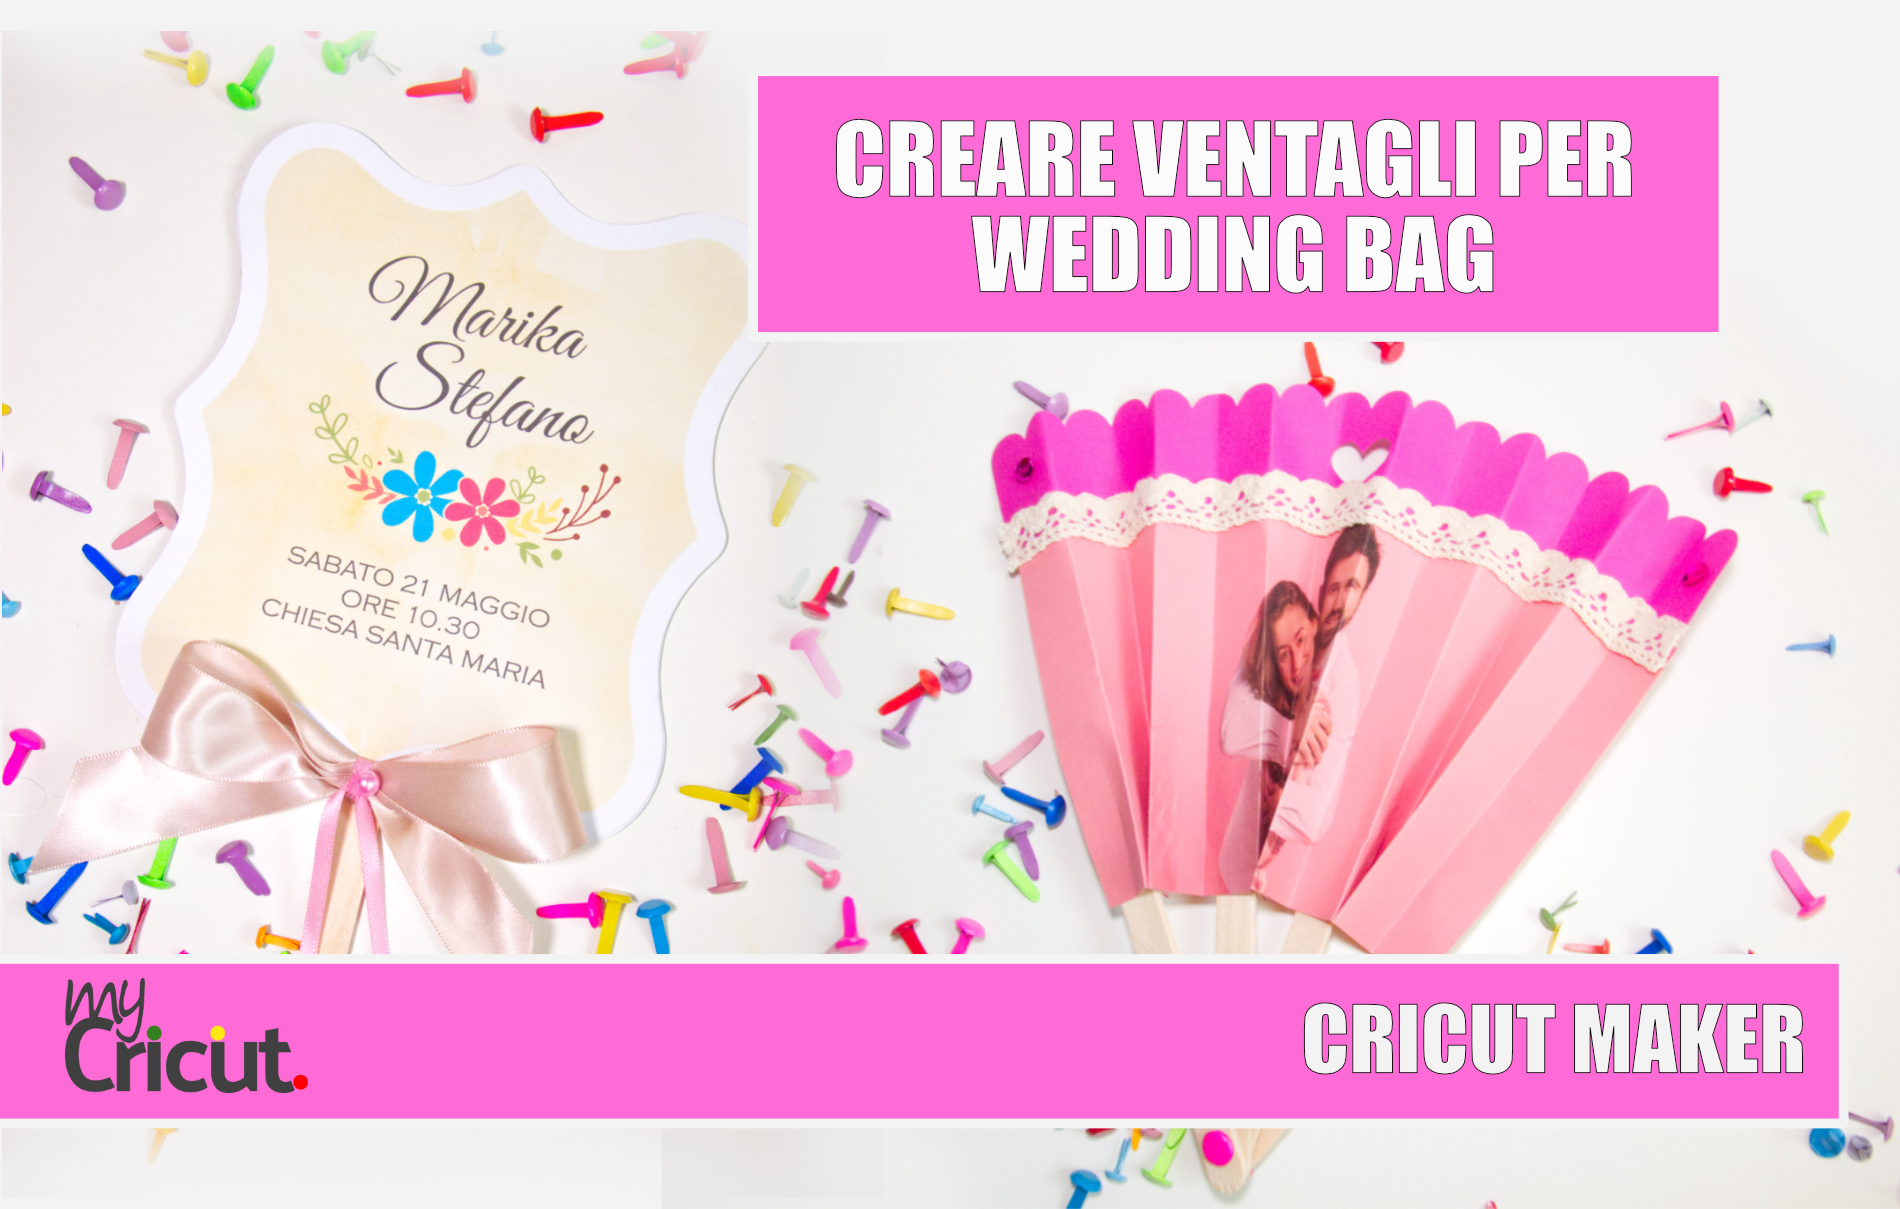 Ventaglio matrimonio wedding bag cricut